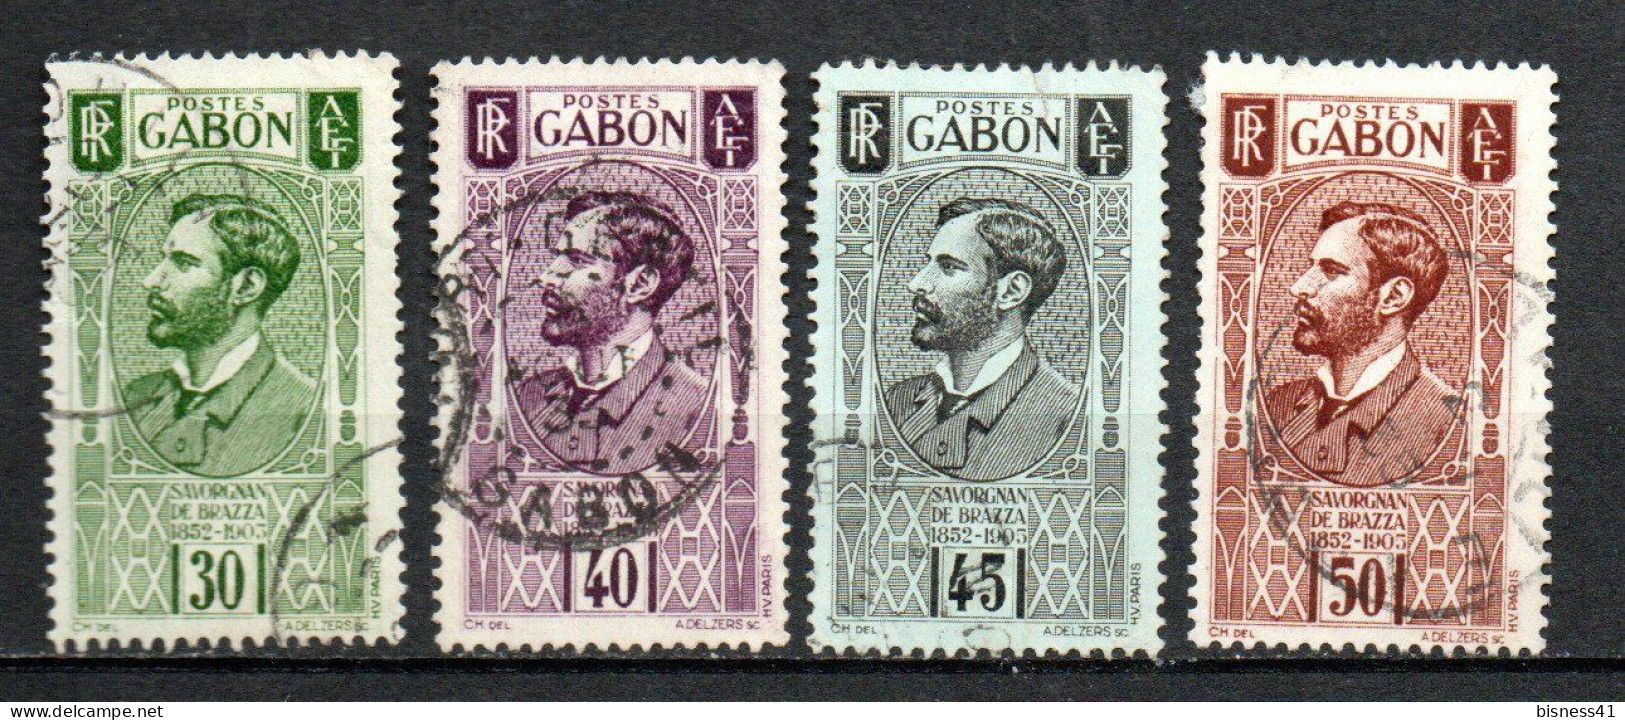 Col40 Colonie Gabon 1932 N° 133 à 136 Oblitéré Cote 8,00€ - Gebraucht